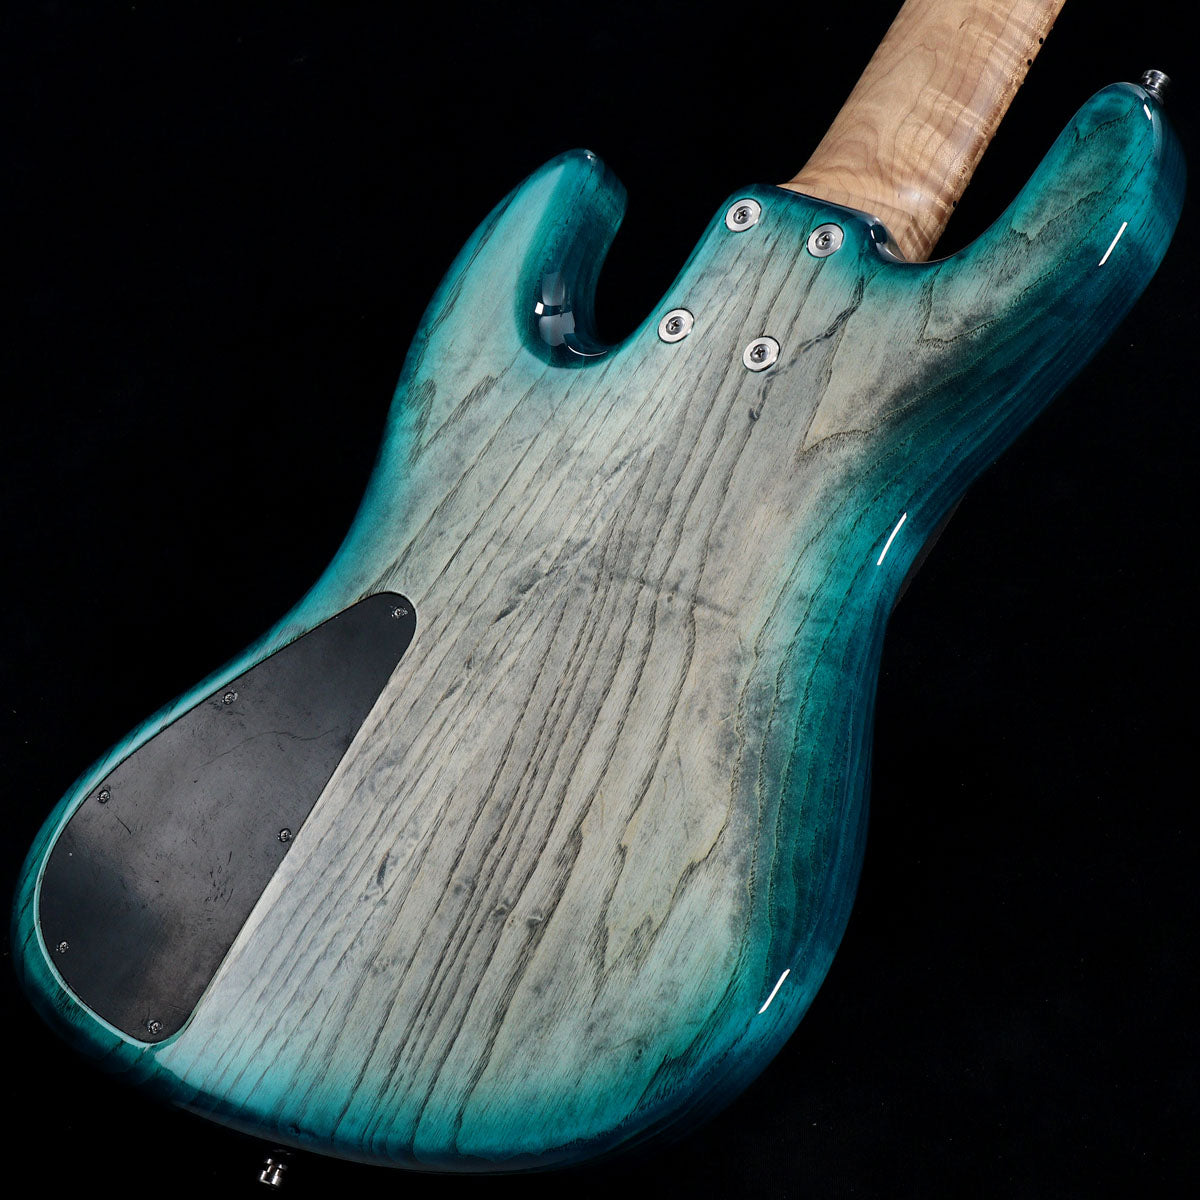 [SN K000035-20] Sadowsky / 2020 Limited Built 21Fret Vintage J Bass 5 Whale Blue Transparent High Polish Burst [05]